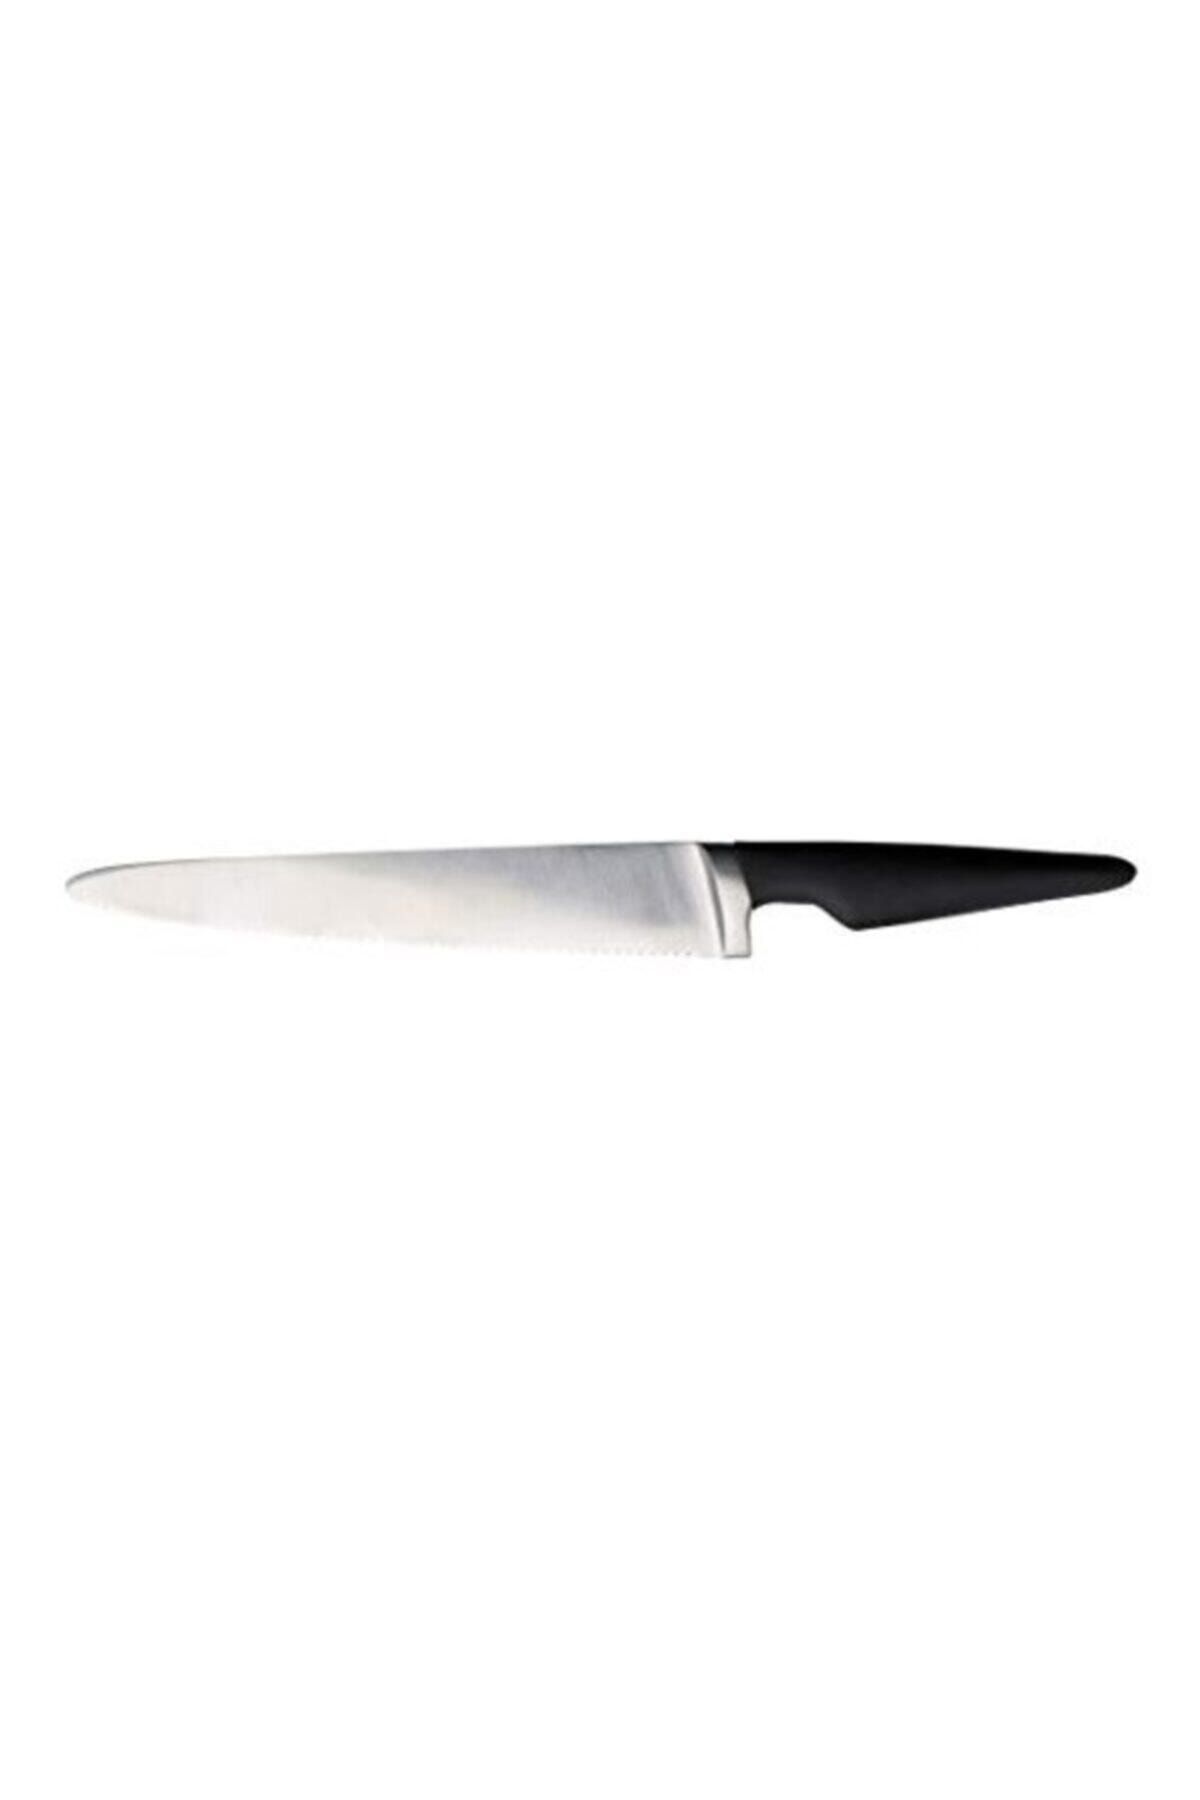 BARBUN Ikea Vörda Ekmek Bıçağı - 37 Cm Uzunluk - 23 Cm Bıçak